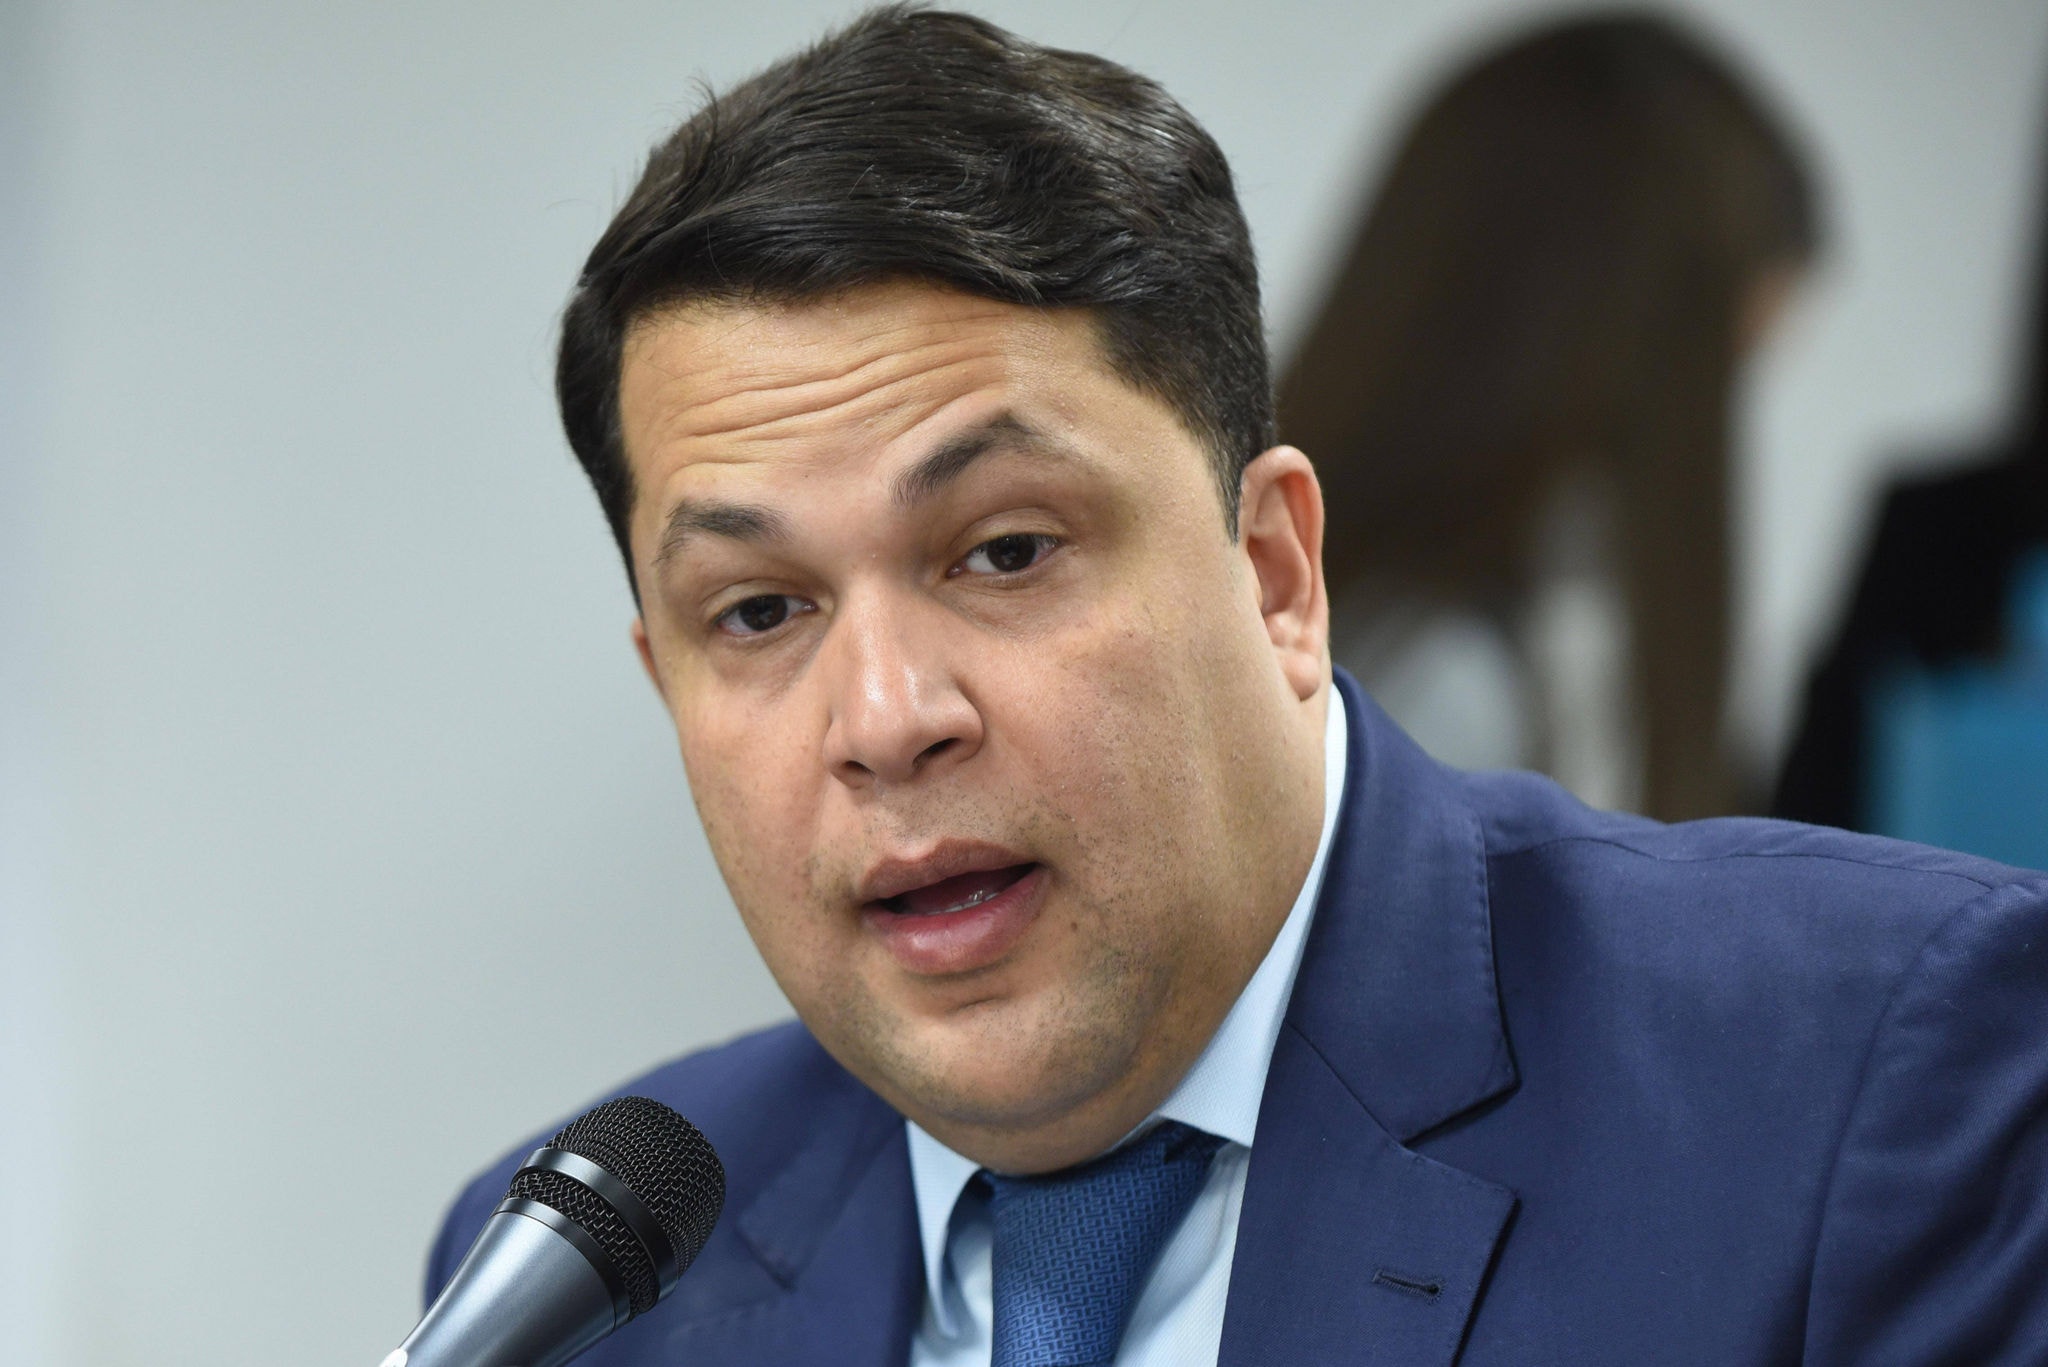 O deputado estadual João Vitor Xavier (Cidadania) foi contrário à federação partidária entre PSDB e Cidadania quando consumada